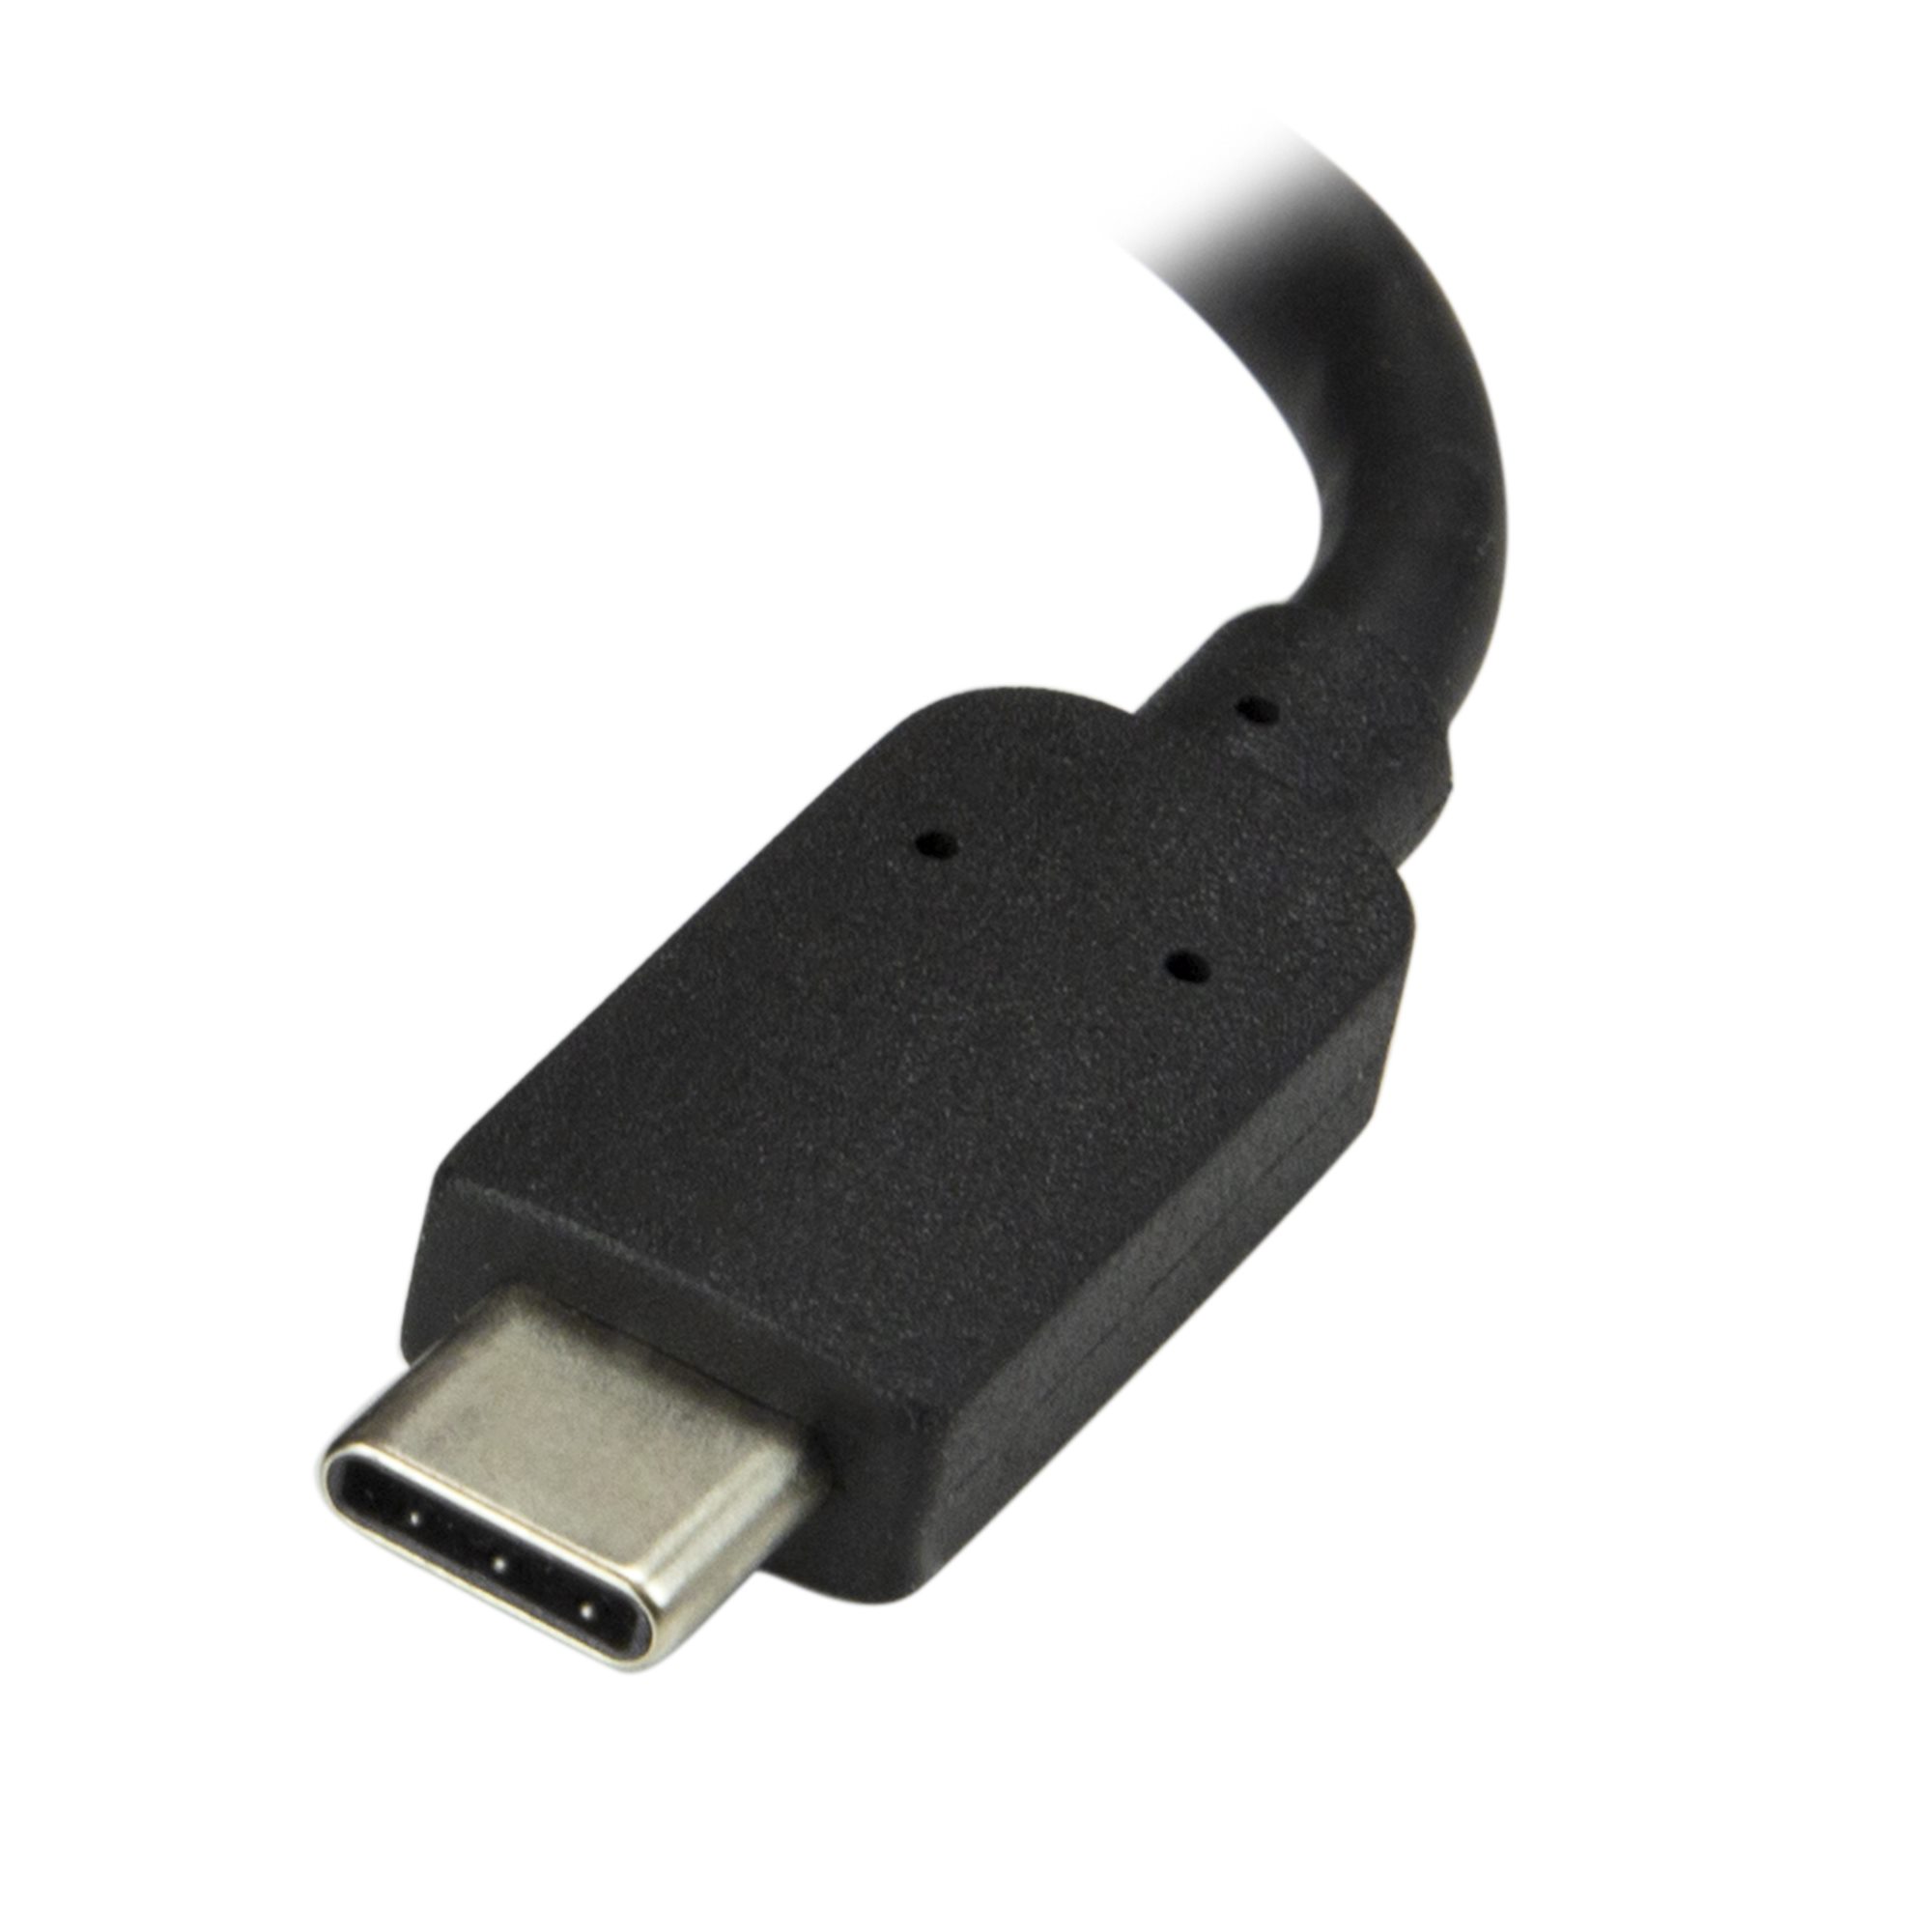 Adaptador USB-C a HDMI + USB + TIPO C Select Power ADAPC-SP